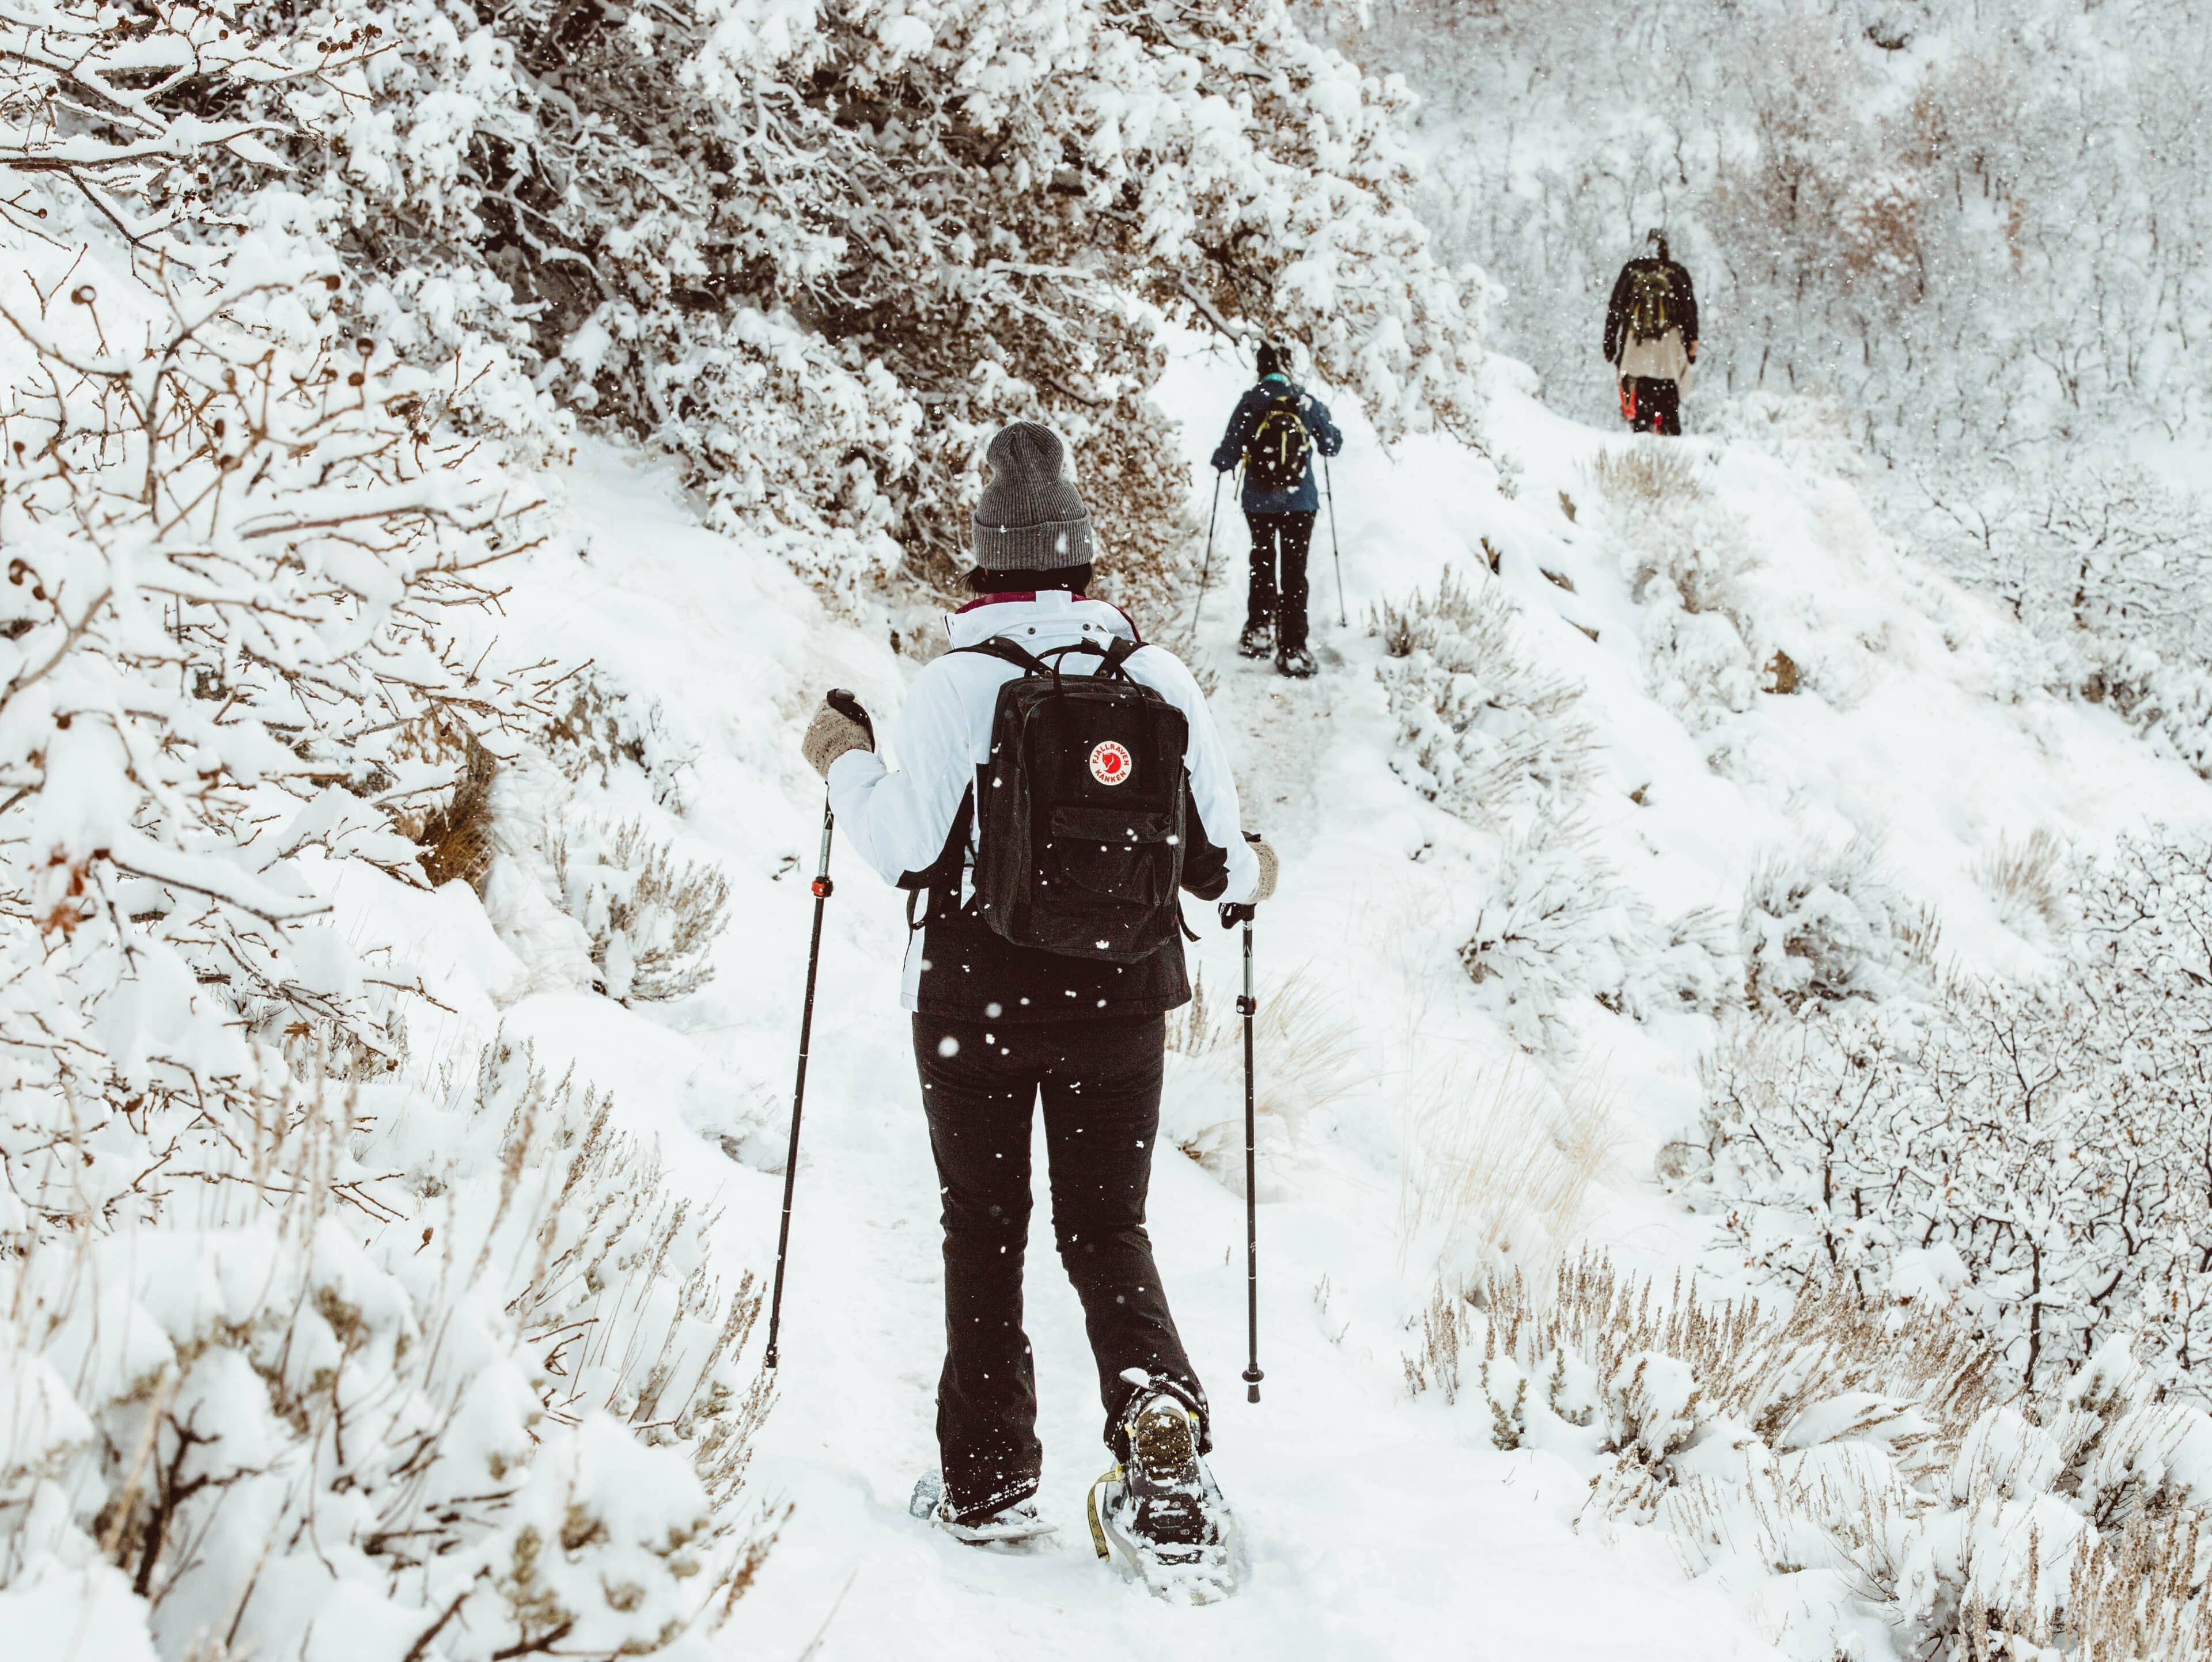 Viajar en invierno a Austria: Caminatas con raquetas de nieve